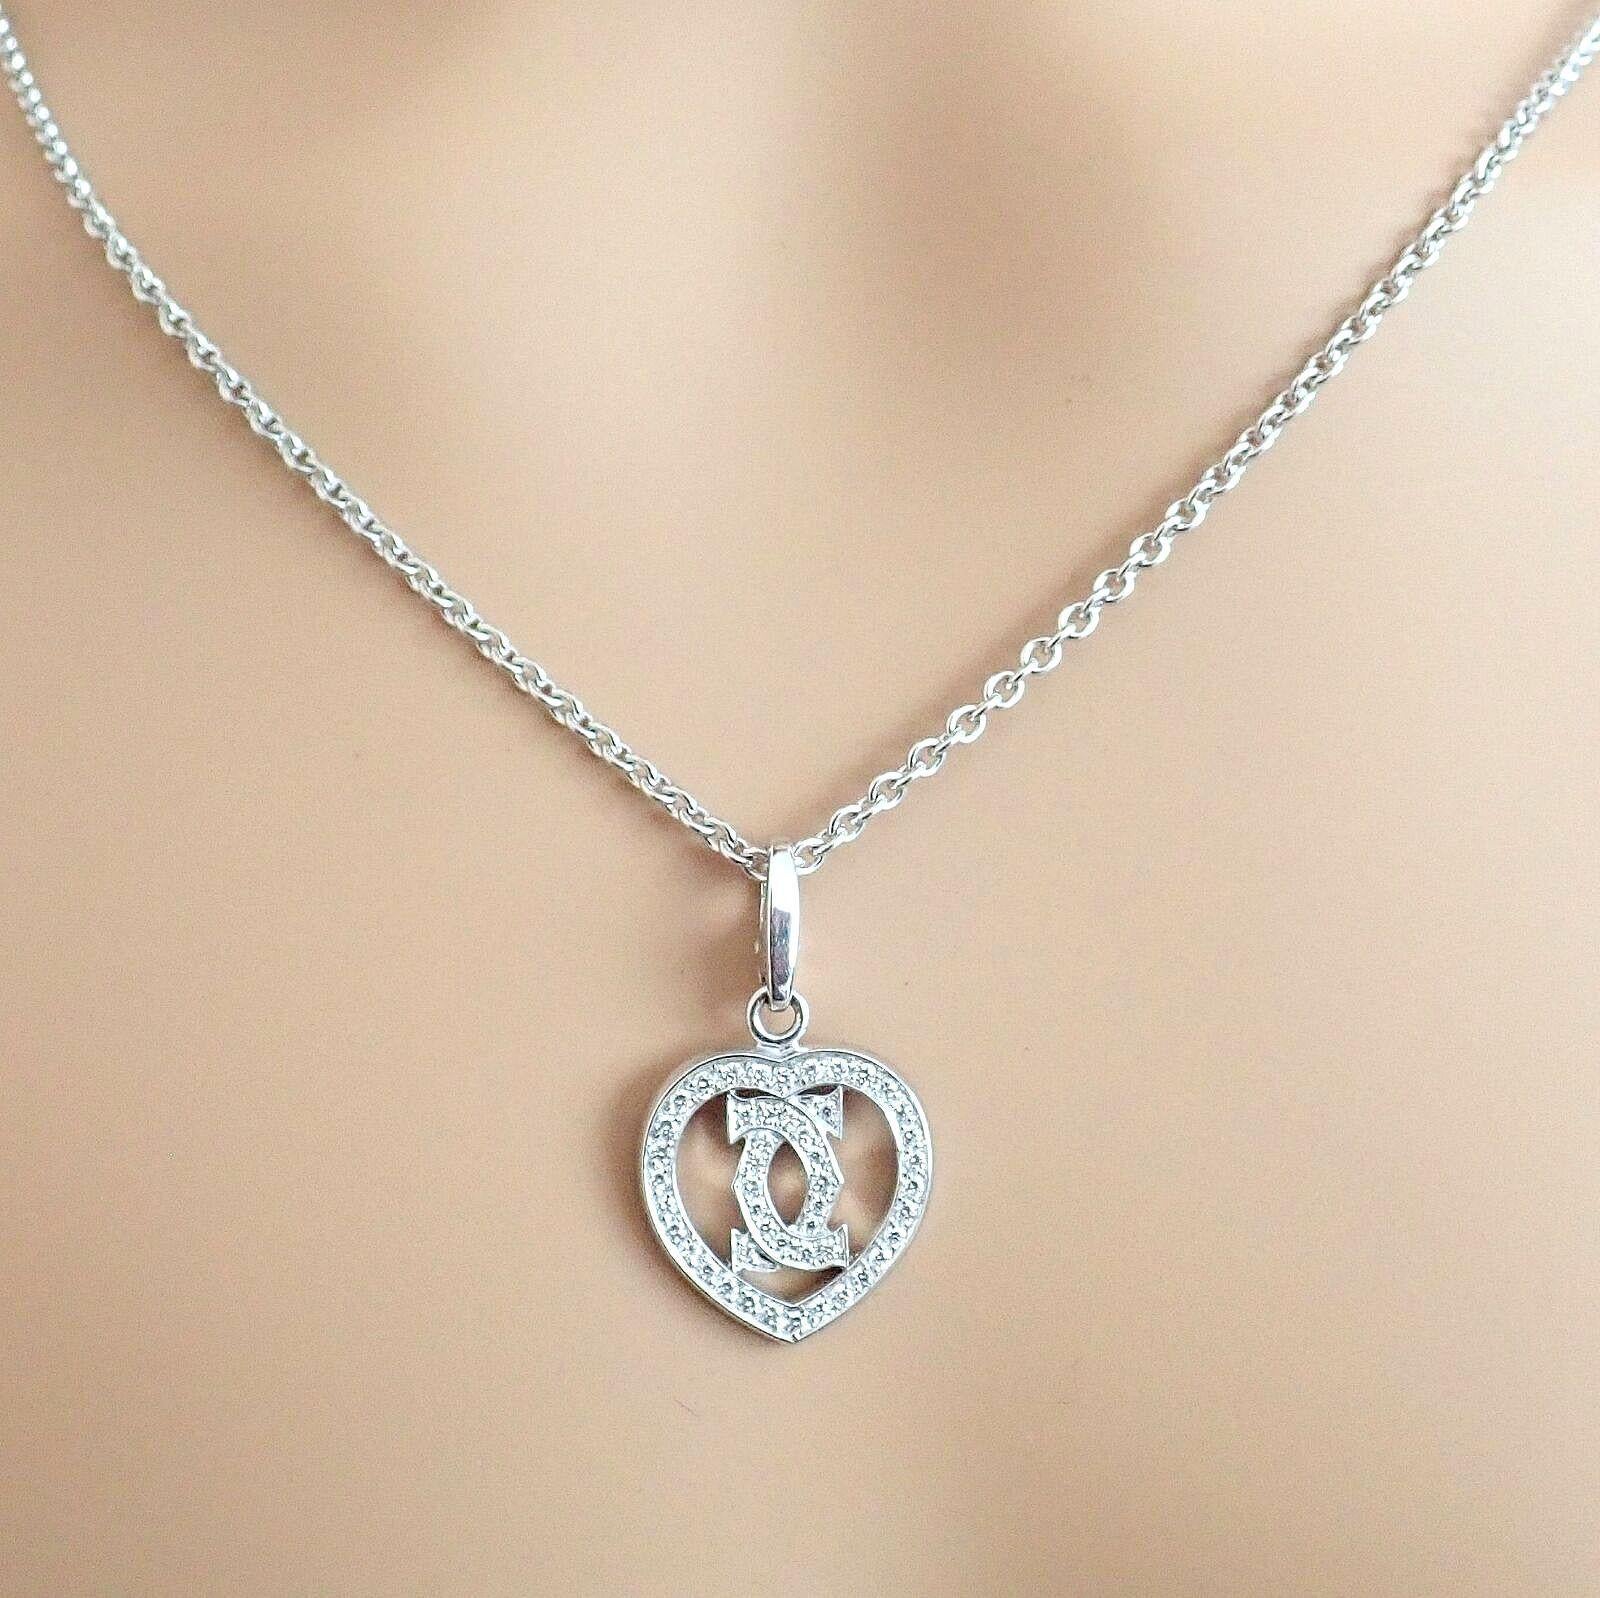 Brilliant Cut Cartier Double C Heart Diamond White Gold Pendant Long Link Chain Necklace